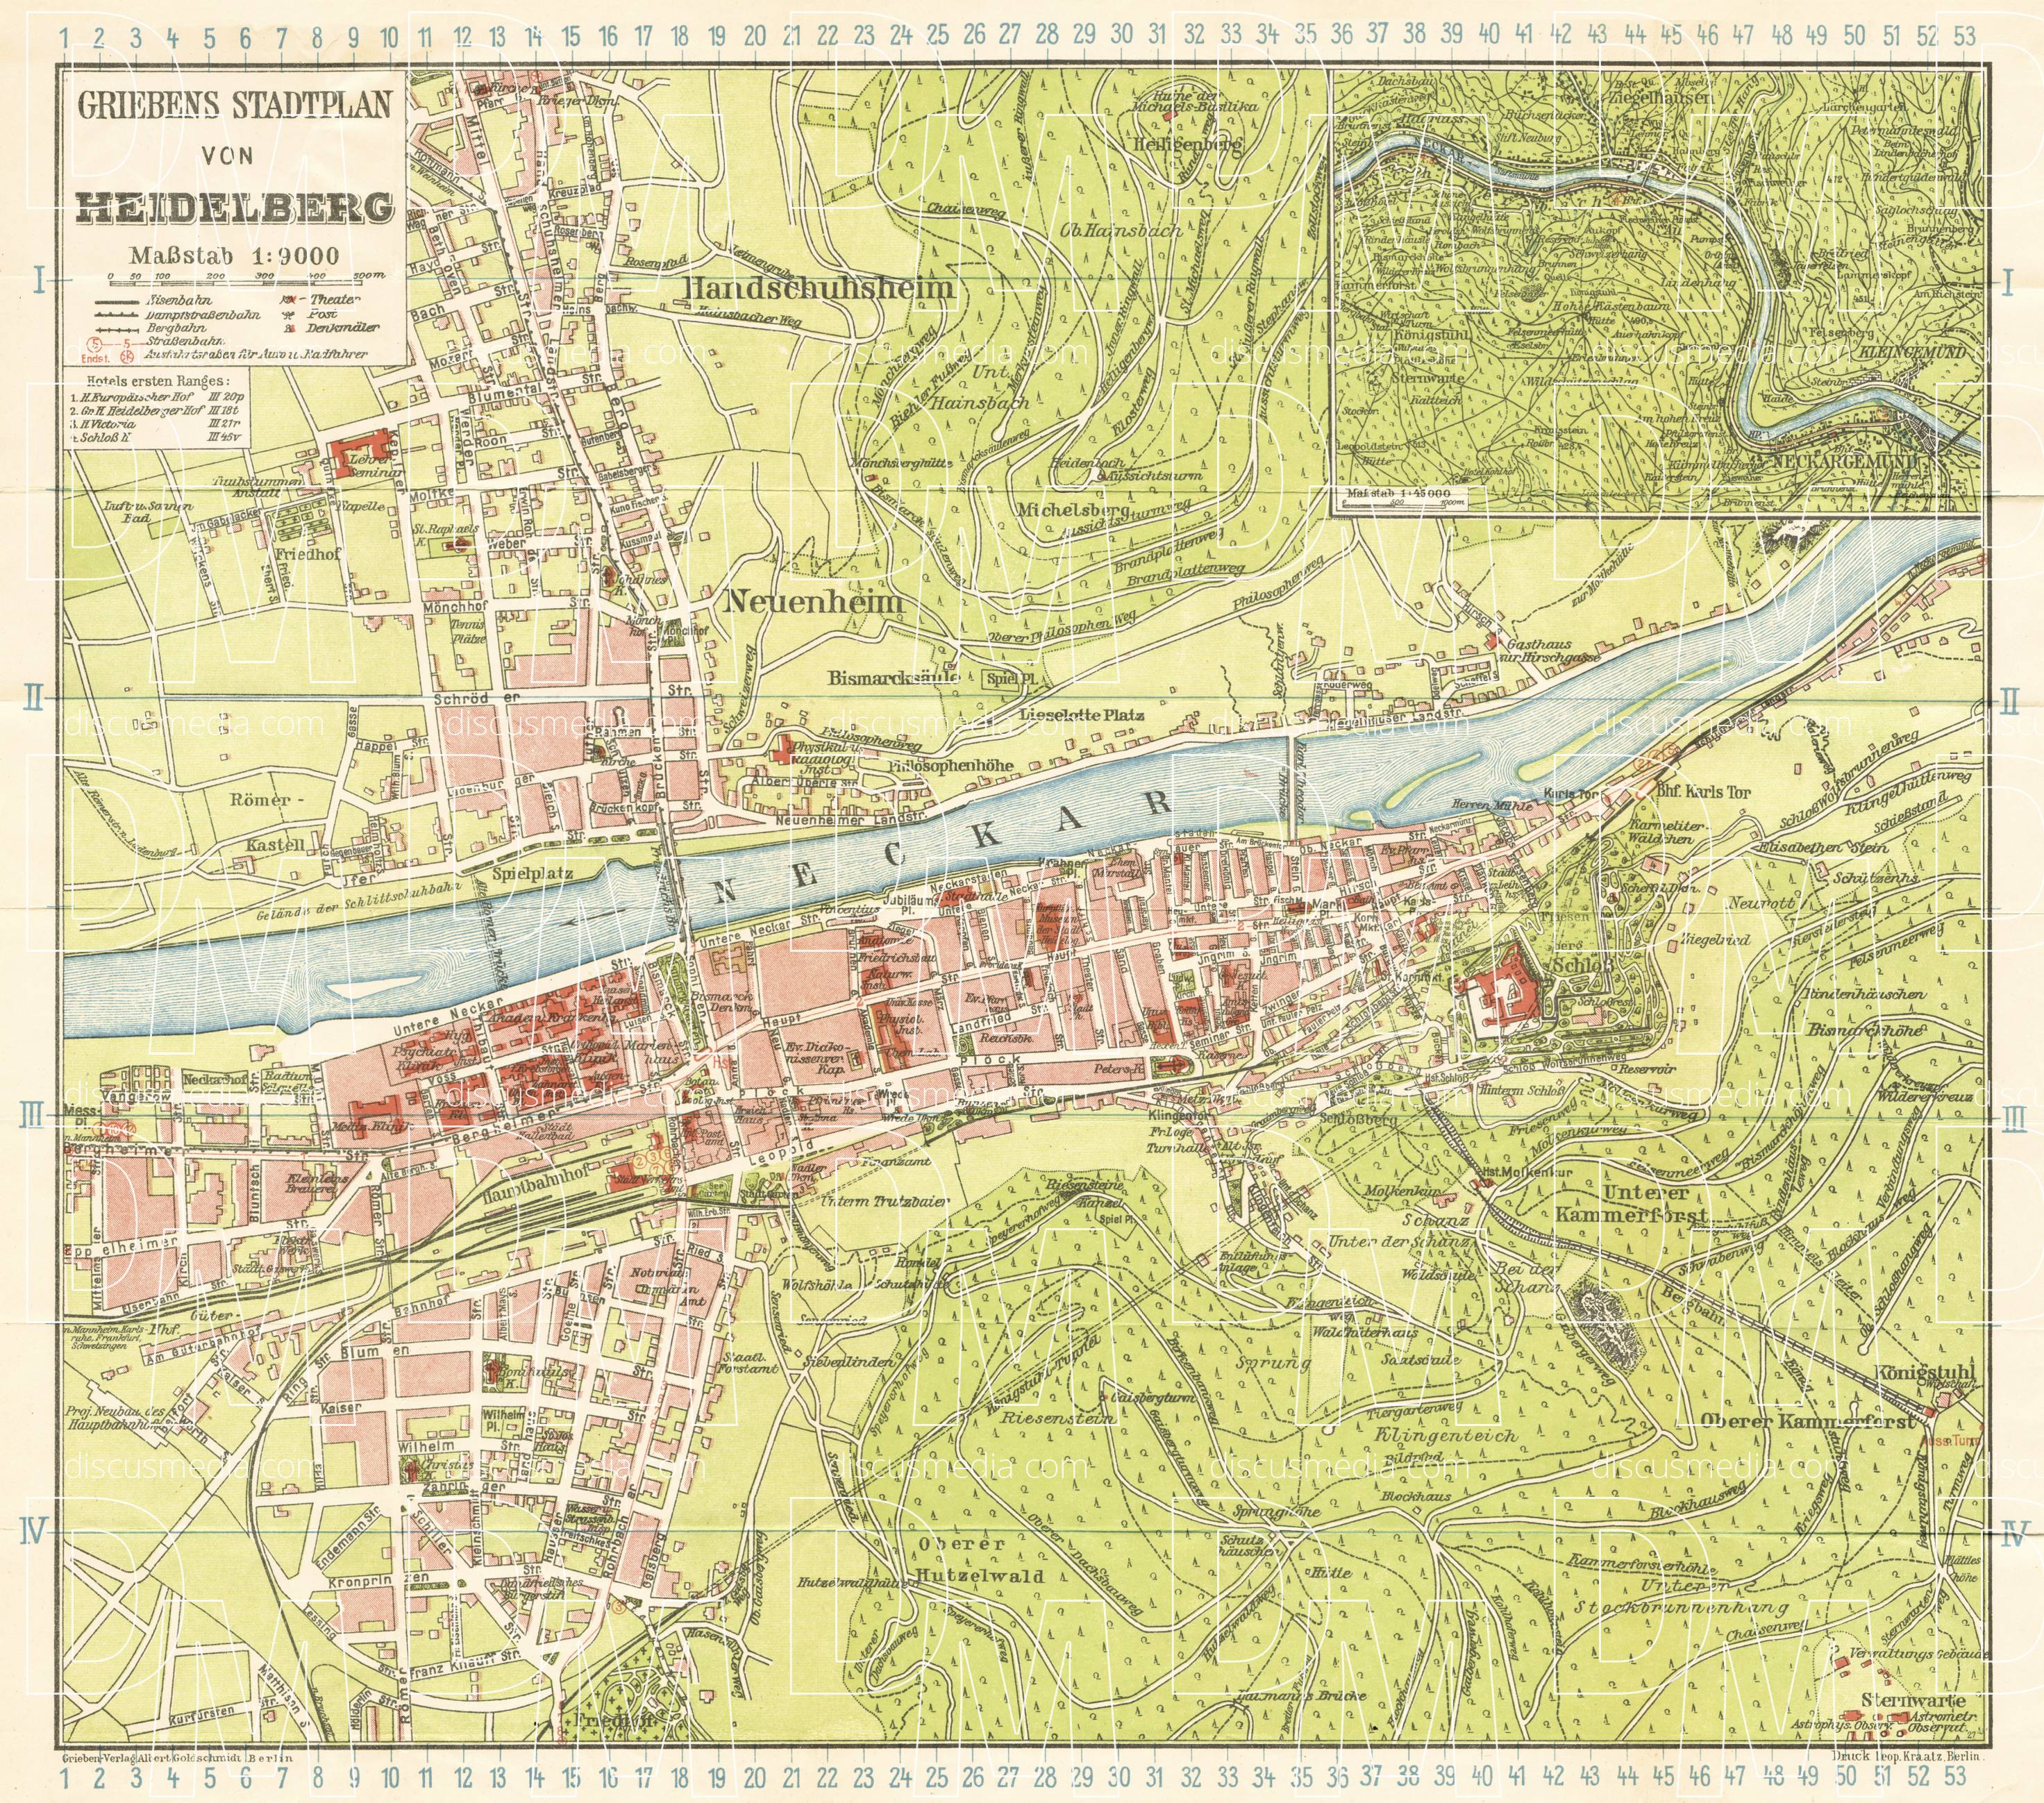 Old map of Heidelberg in 1927. Buy vintage map replica poster print or